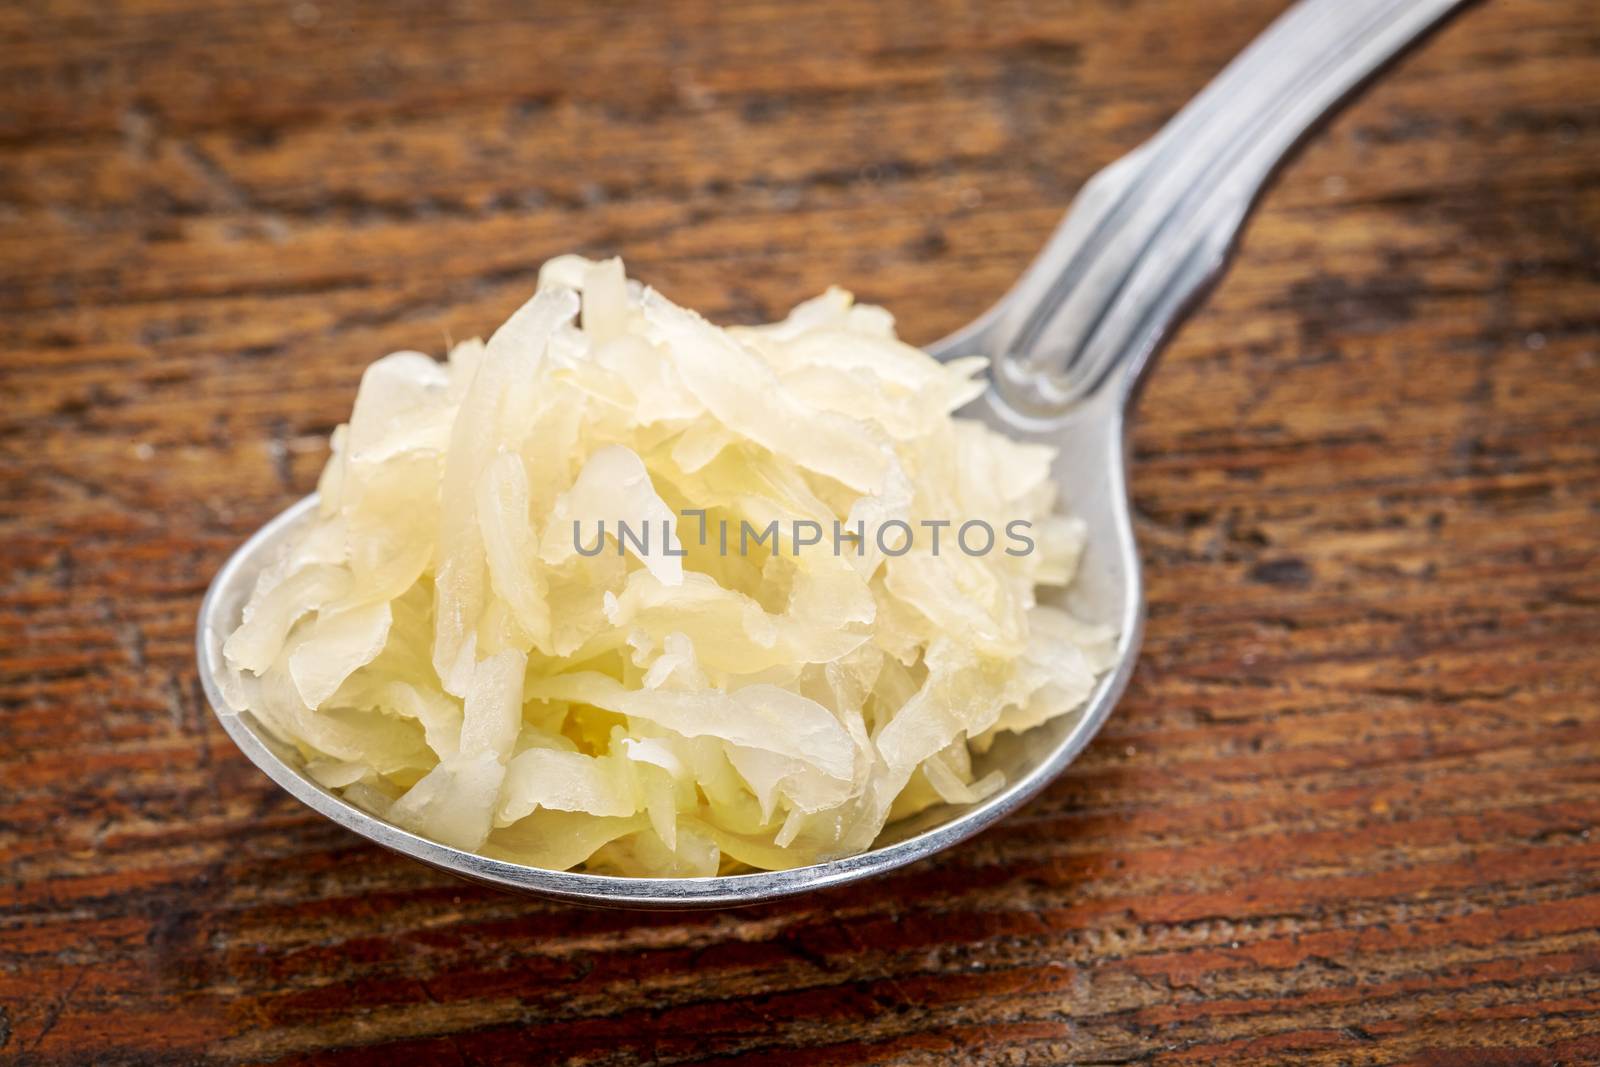 tablespoon of sauerkraut by PixelsAway